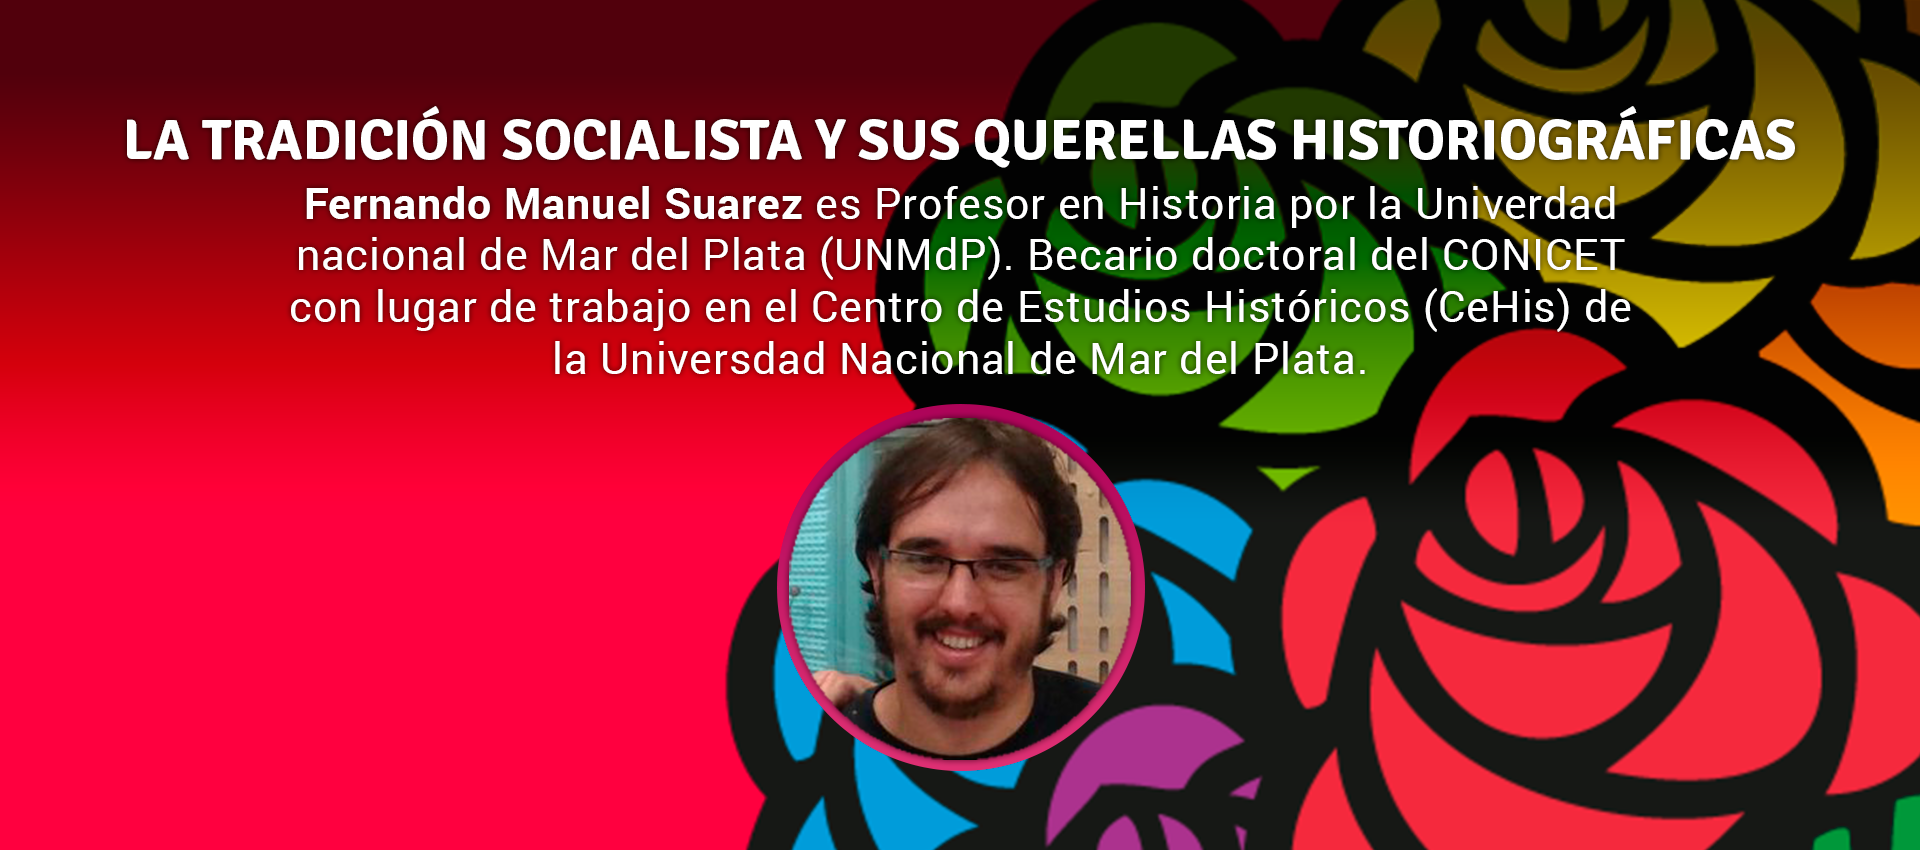 Fernando Manuel Suarez - LA TRADICIÓN SOCIALISTA Y SUS QUERELLAS HISTORIOGRÁFICAS